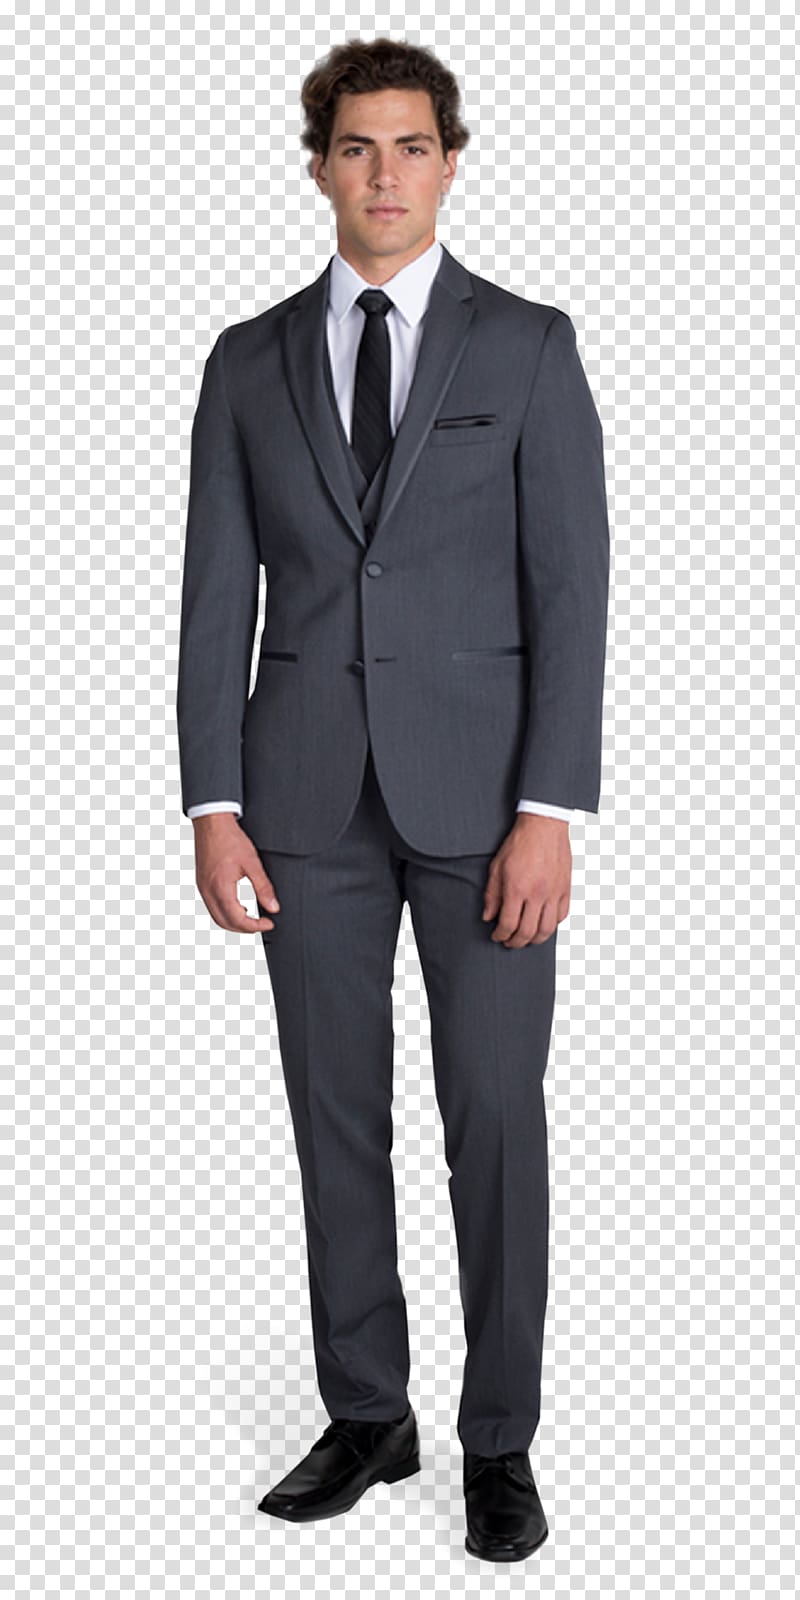 Suit Lapel Clothing Tuxedo Button, Gray Suit transparent background PNG ...